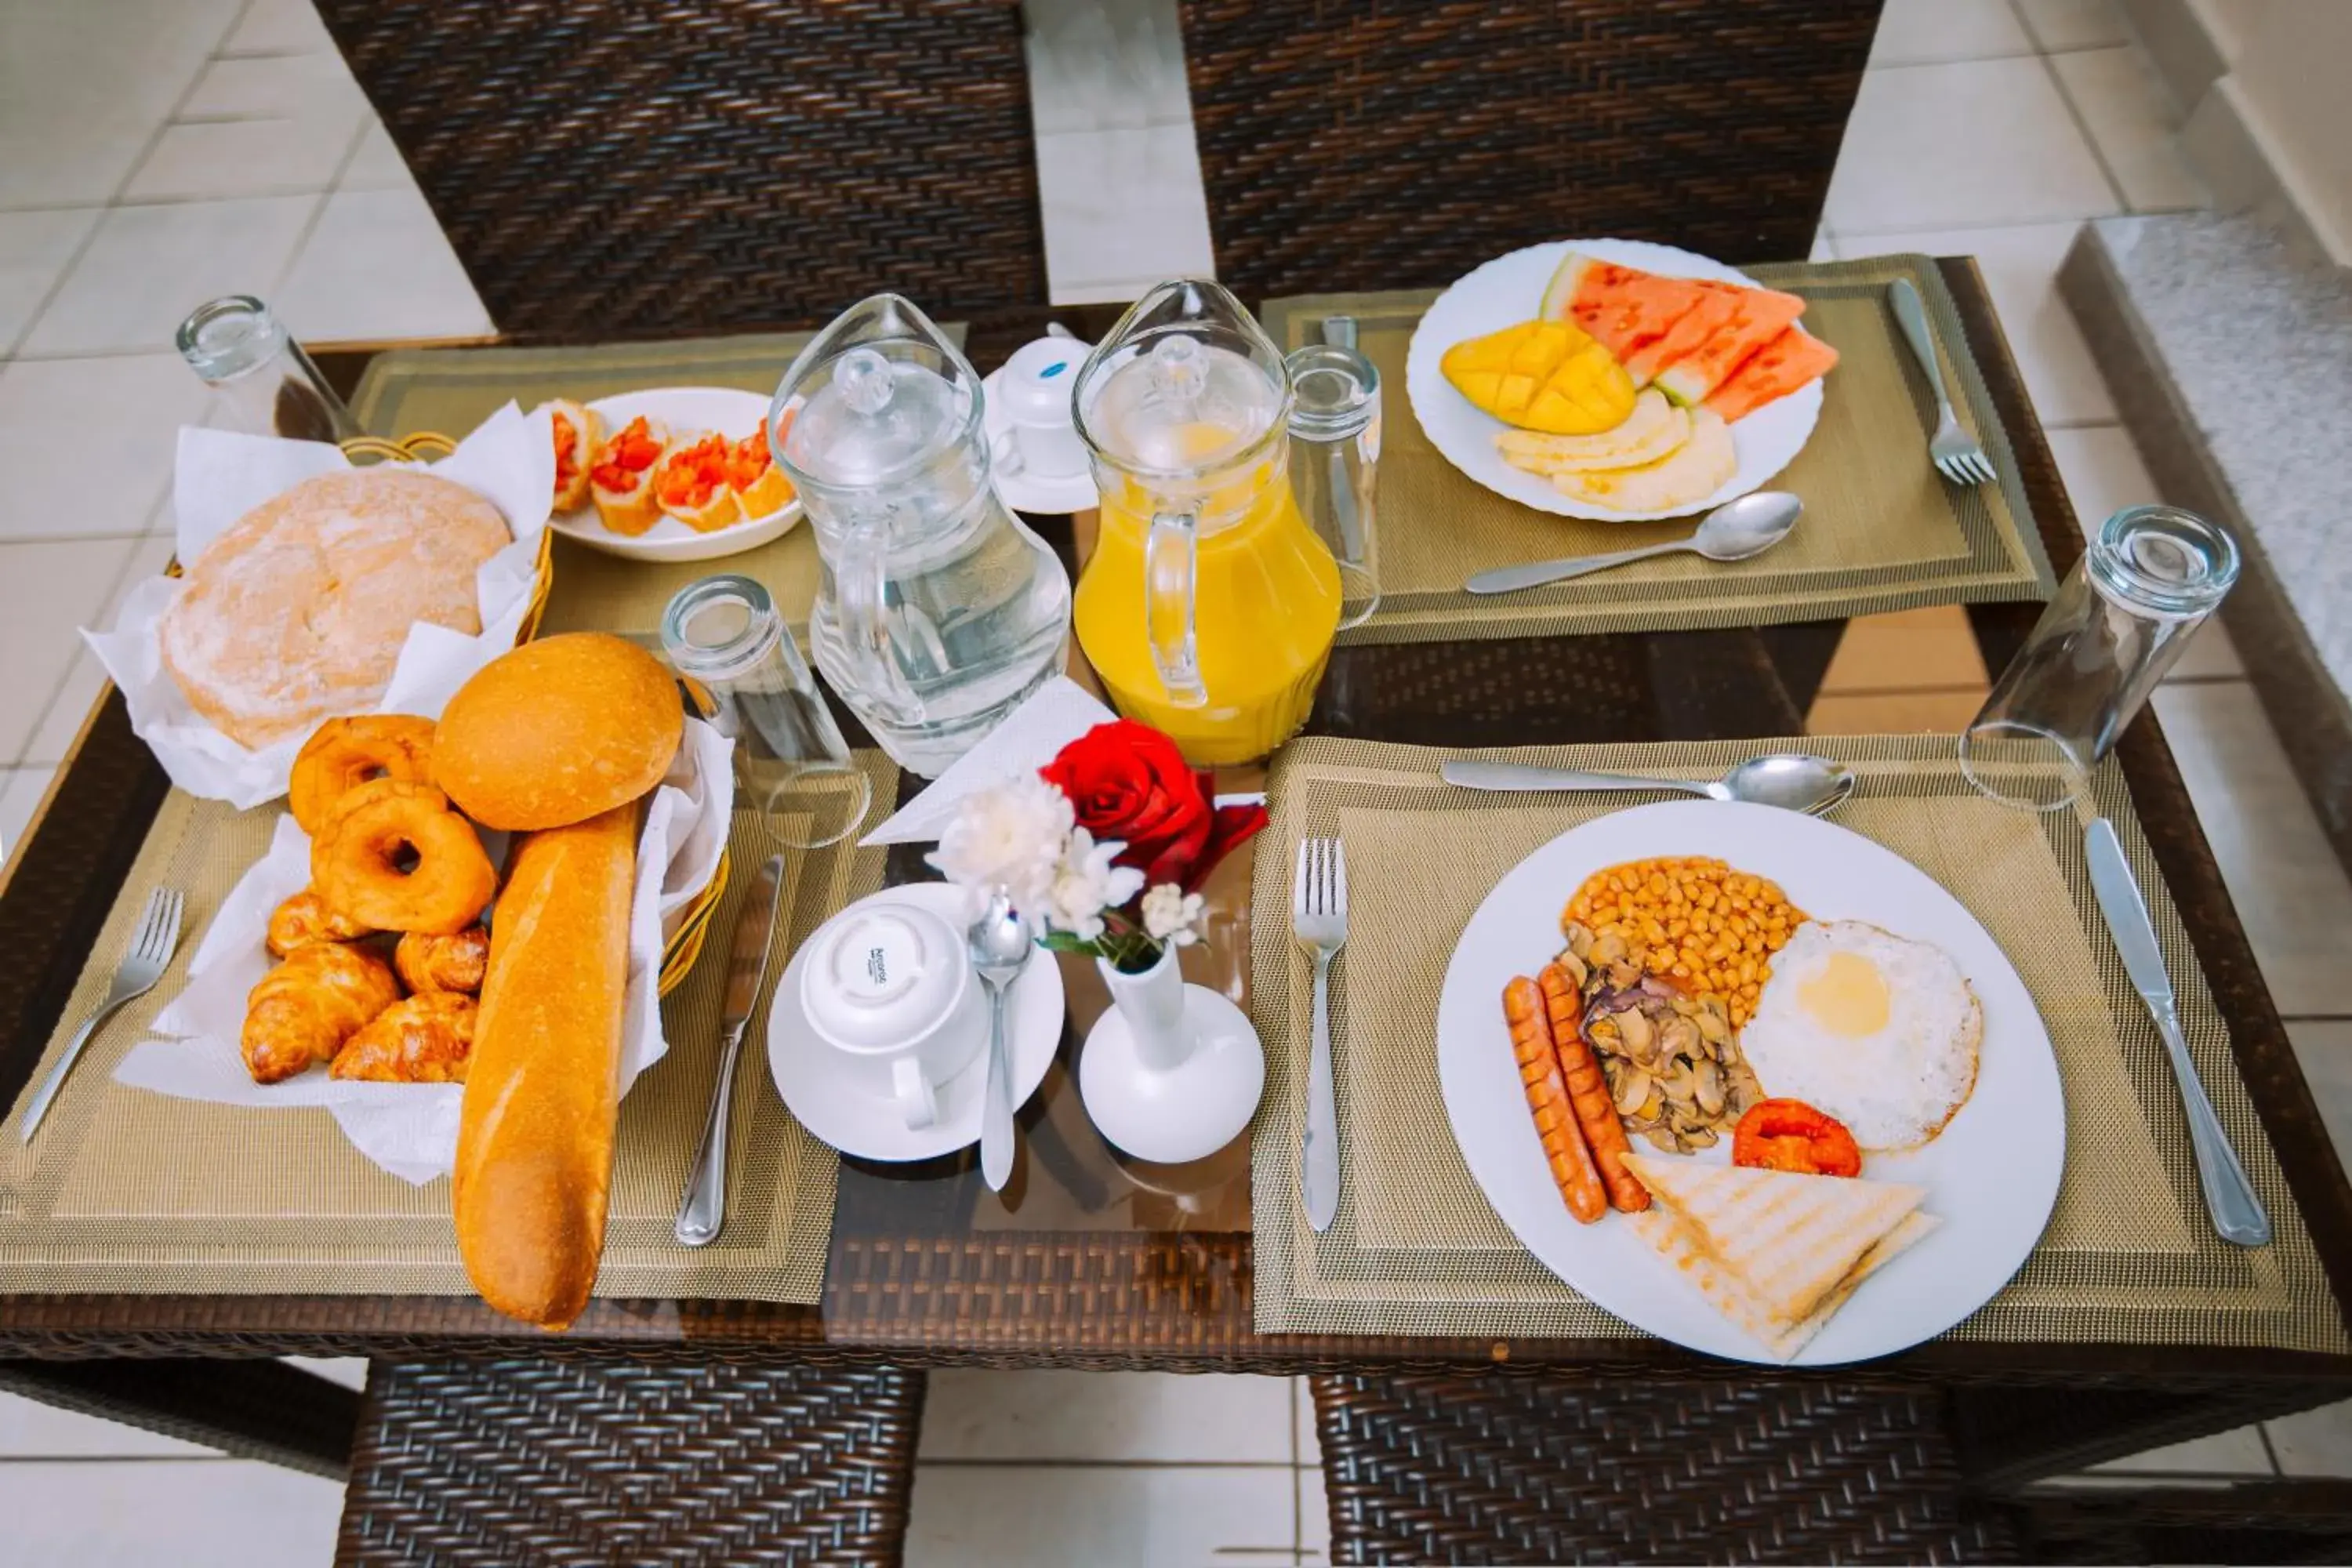 Breakfast in Mayfair Hotel